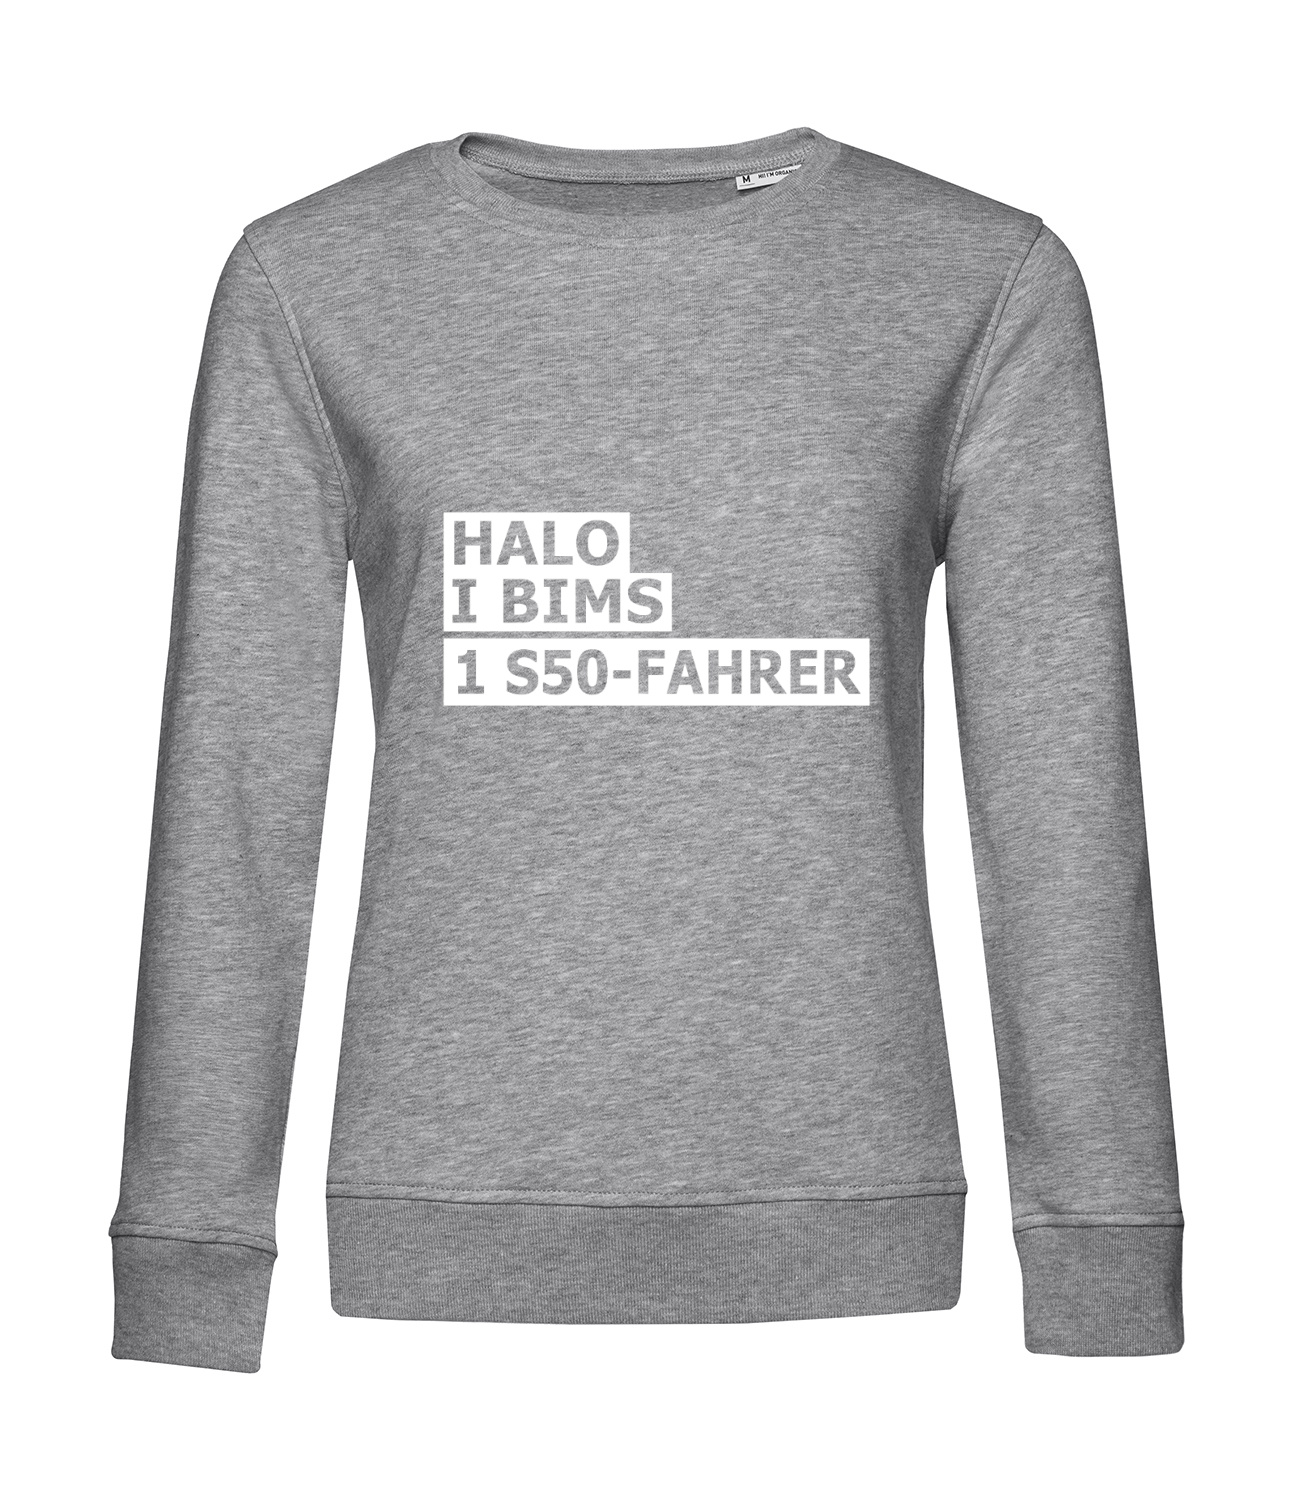 Nachhaltiges Sweatshirt Damen 2Takter - Halo I bims 1 S50-Fahrer